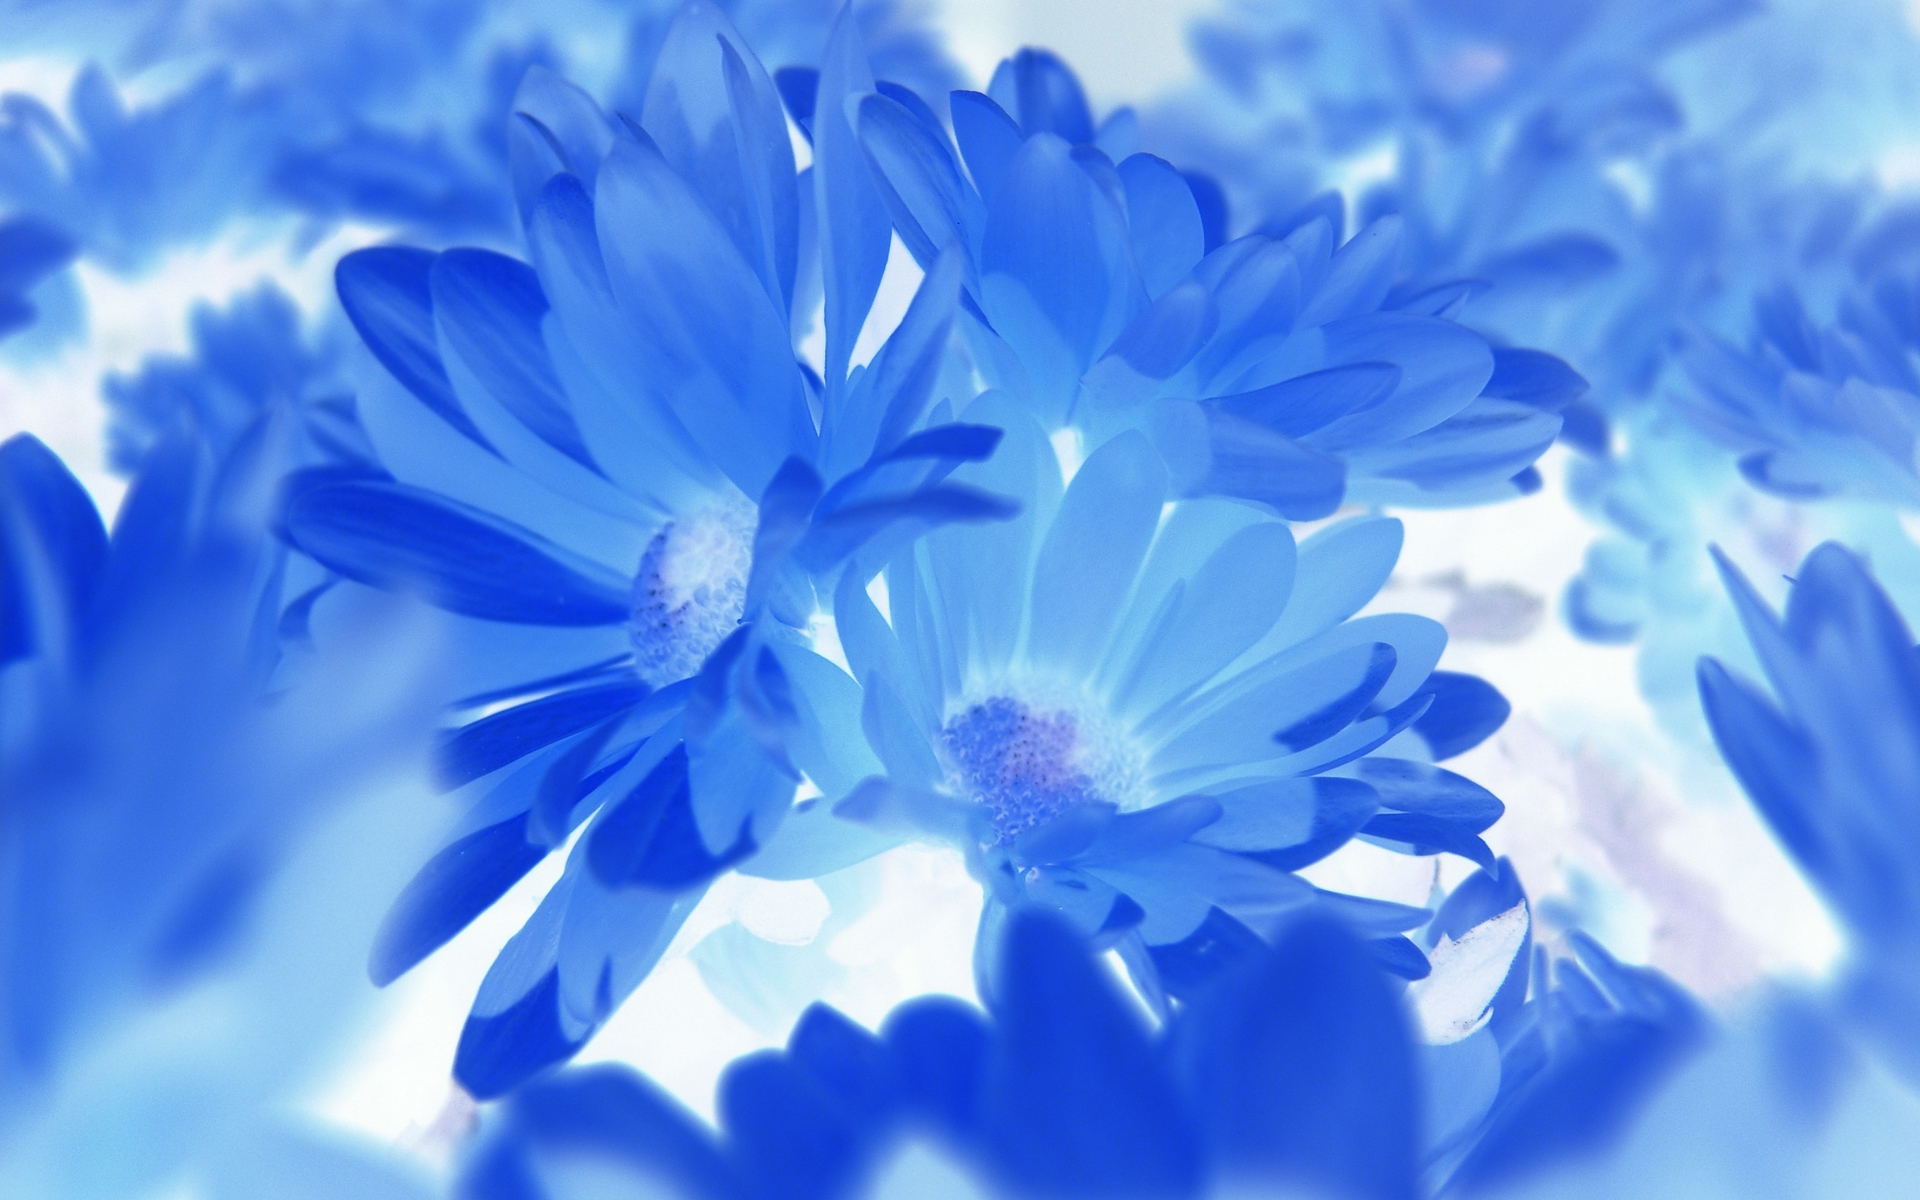 Blue Flower Wallpapers Hd Resolution - Fond Ecran Fleur Bleu , HD Wallpaper & Backgrounds